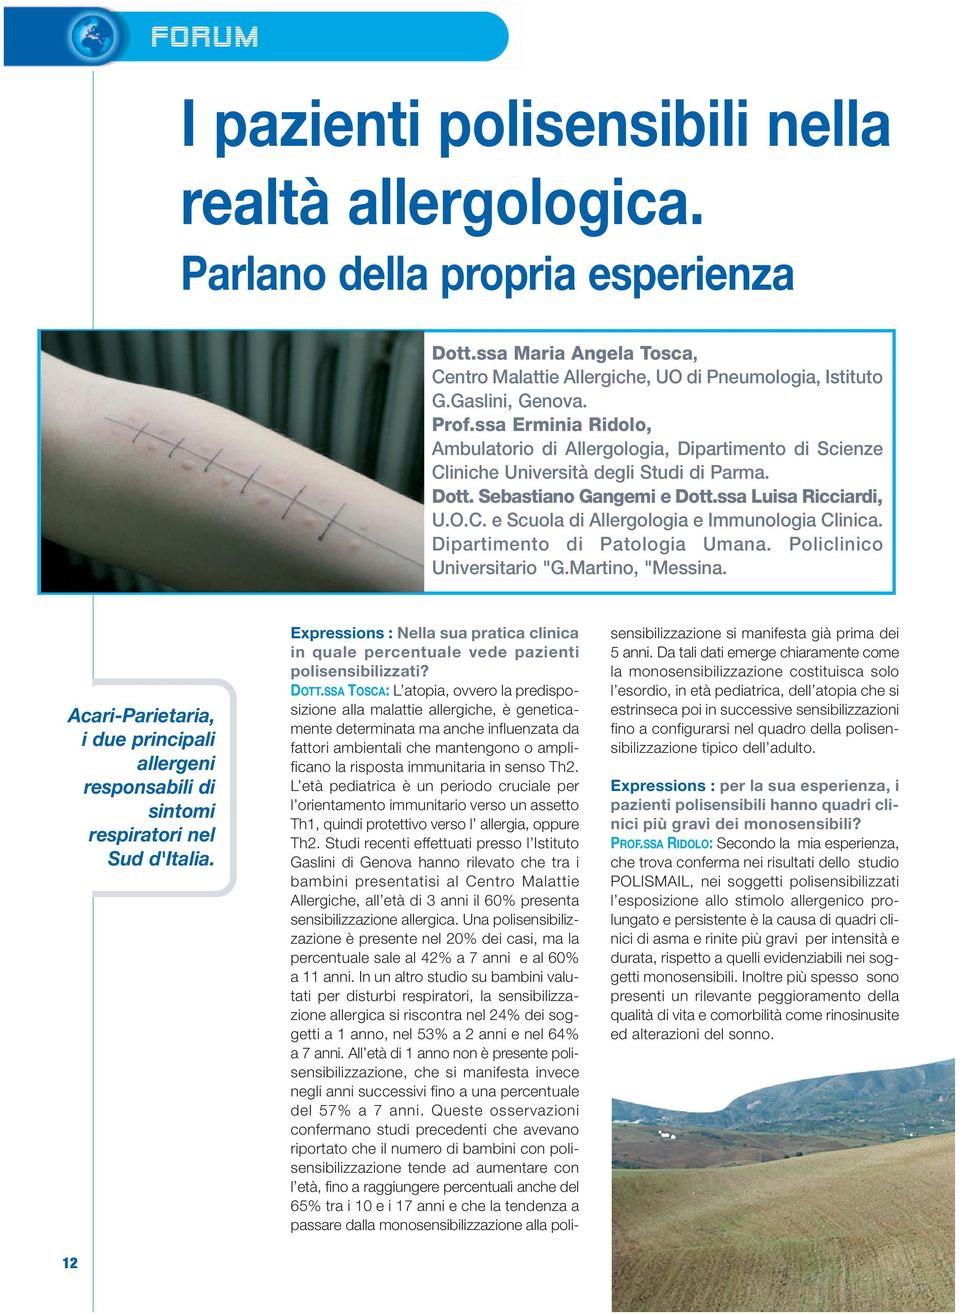 Dipartimento di Patologia Umana. Policlinico Universitario "G.Martino, "Messina. Acari-Parietaria, i due principali allergeni responsabili di sintomi respiratori nel Sud d'italia.